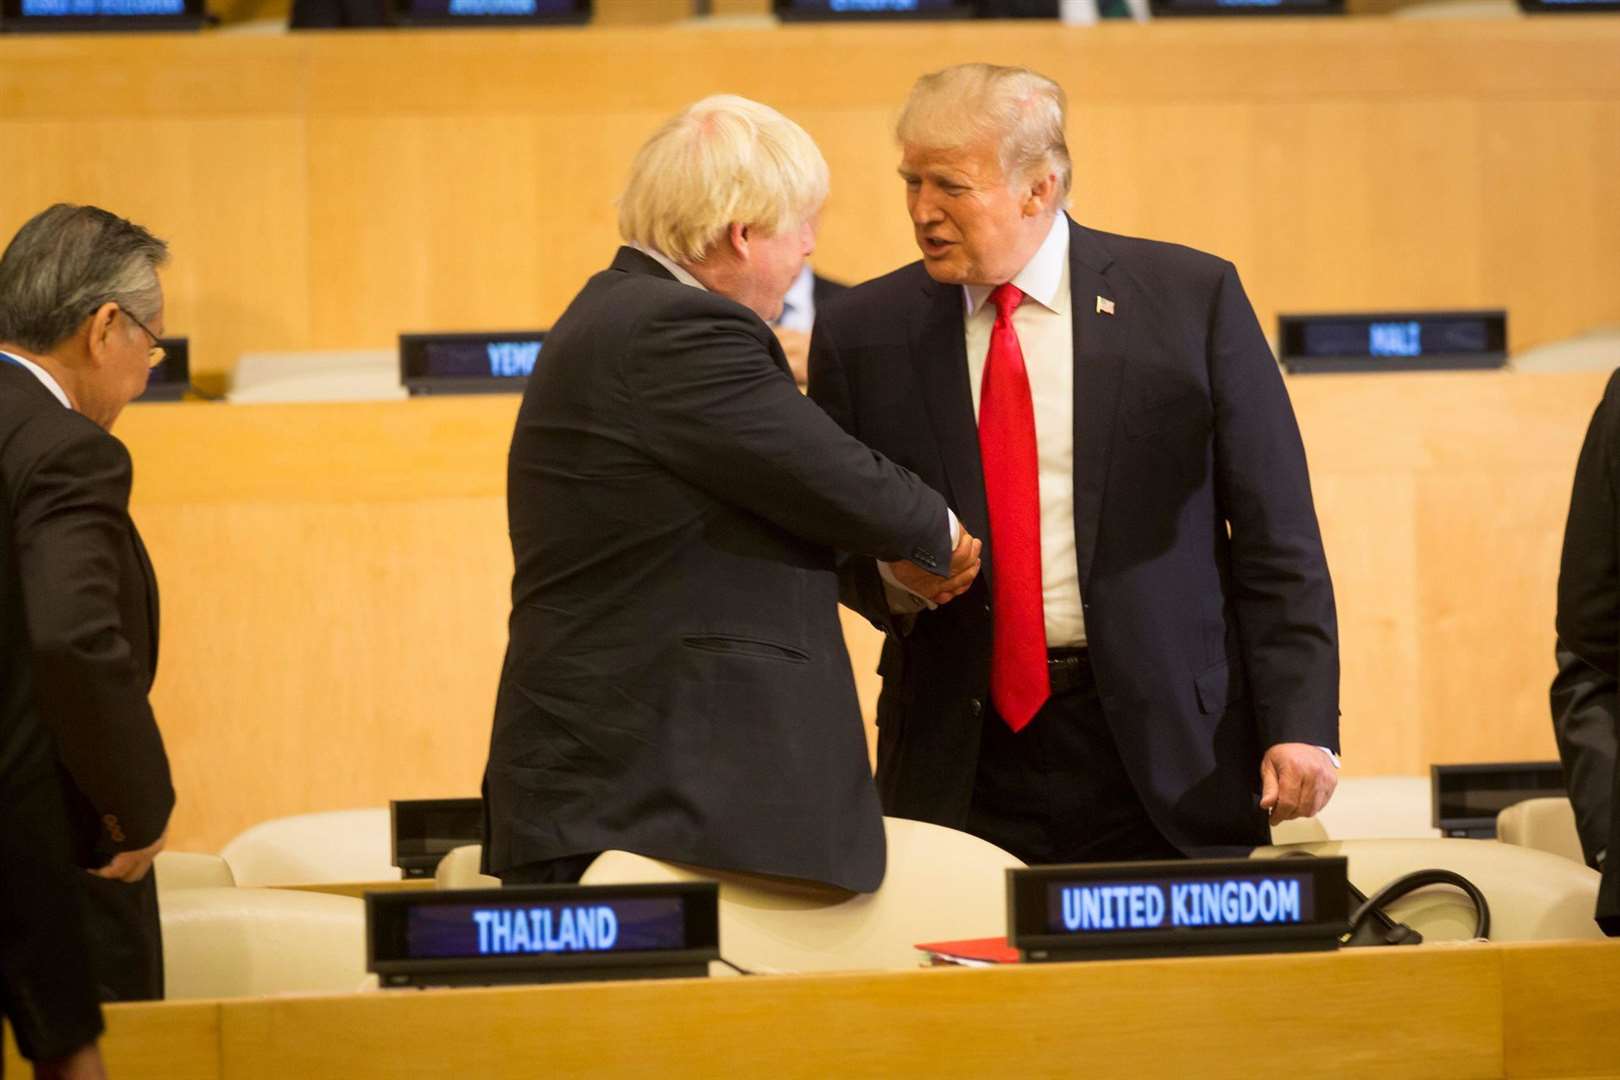 Mr Lochhead compared Boris Johnson to U.S. President Donald Trump.